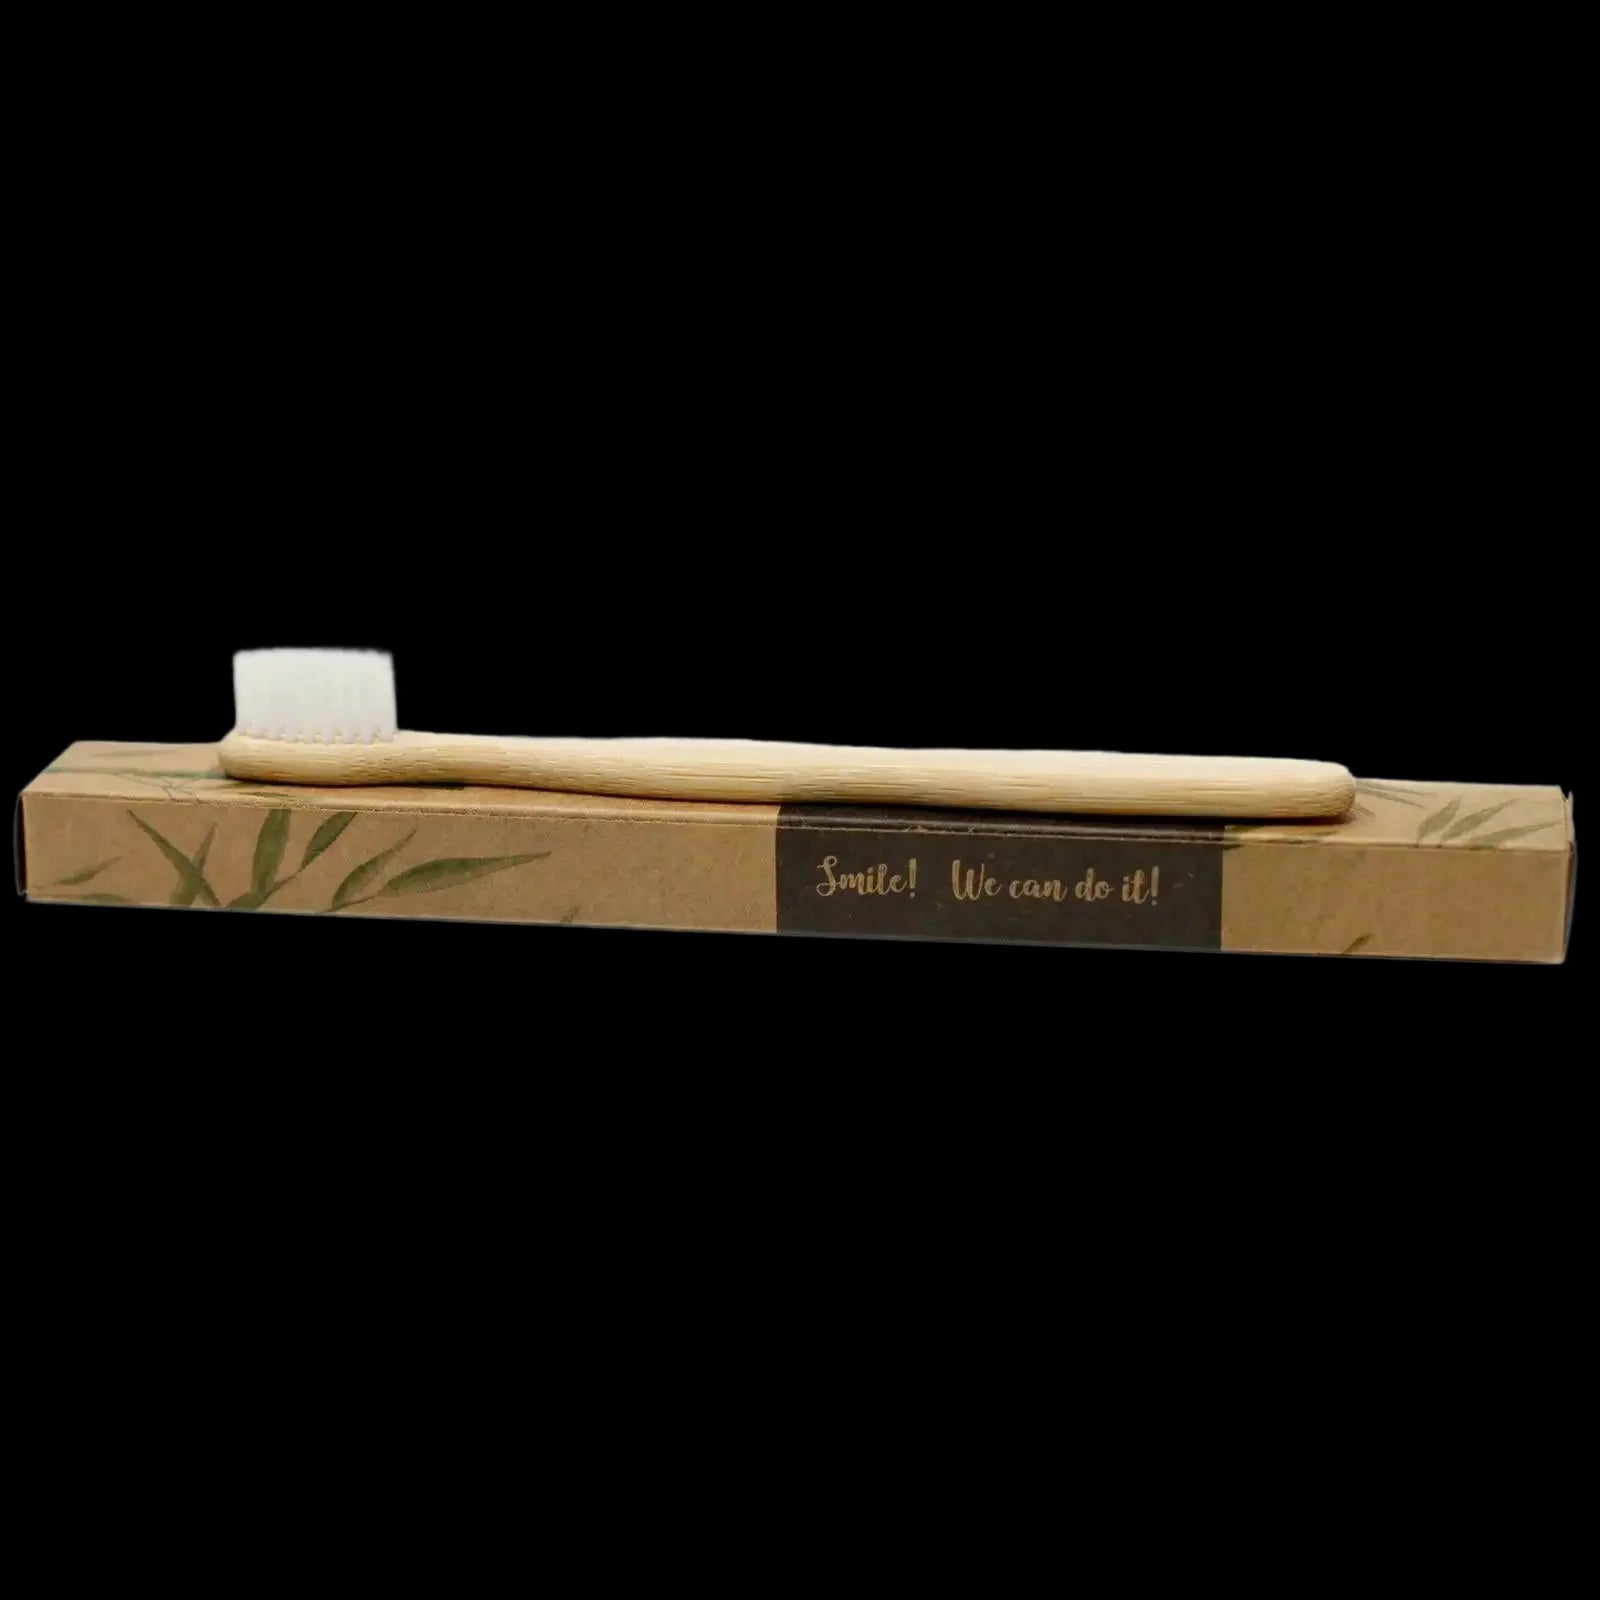 Bamboo Toothbrush - White - Family Pack Of 4 - Med Soft